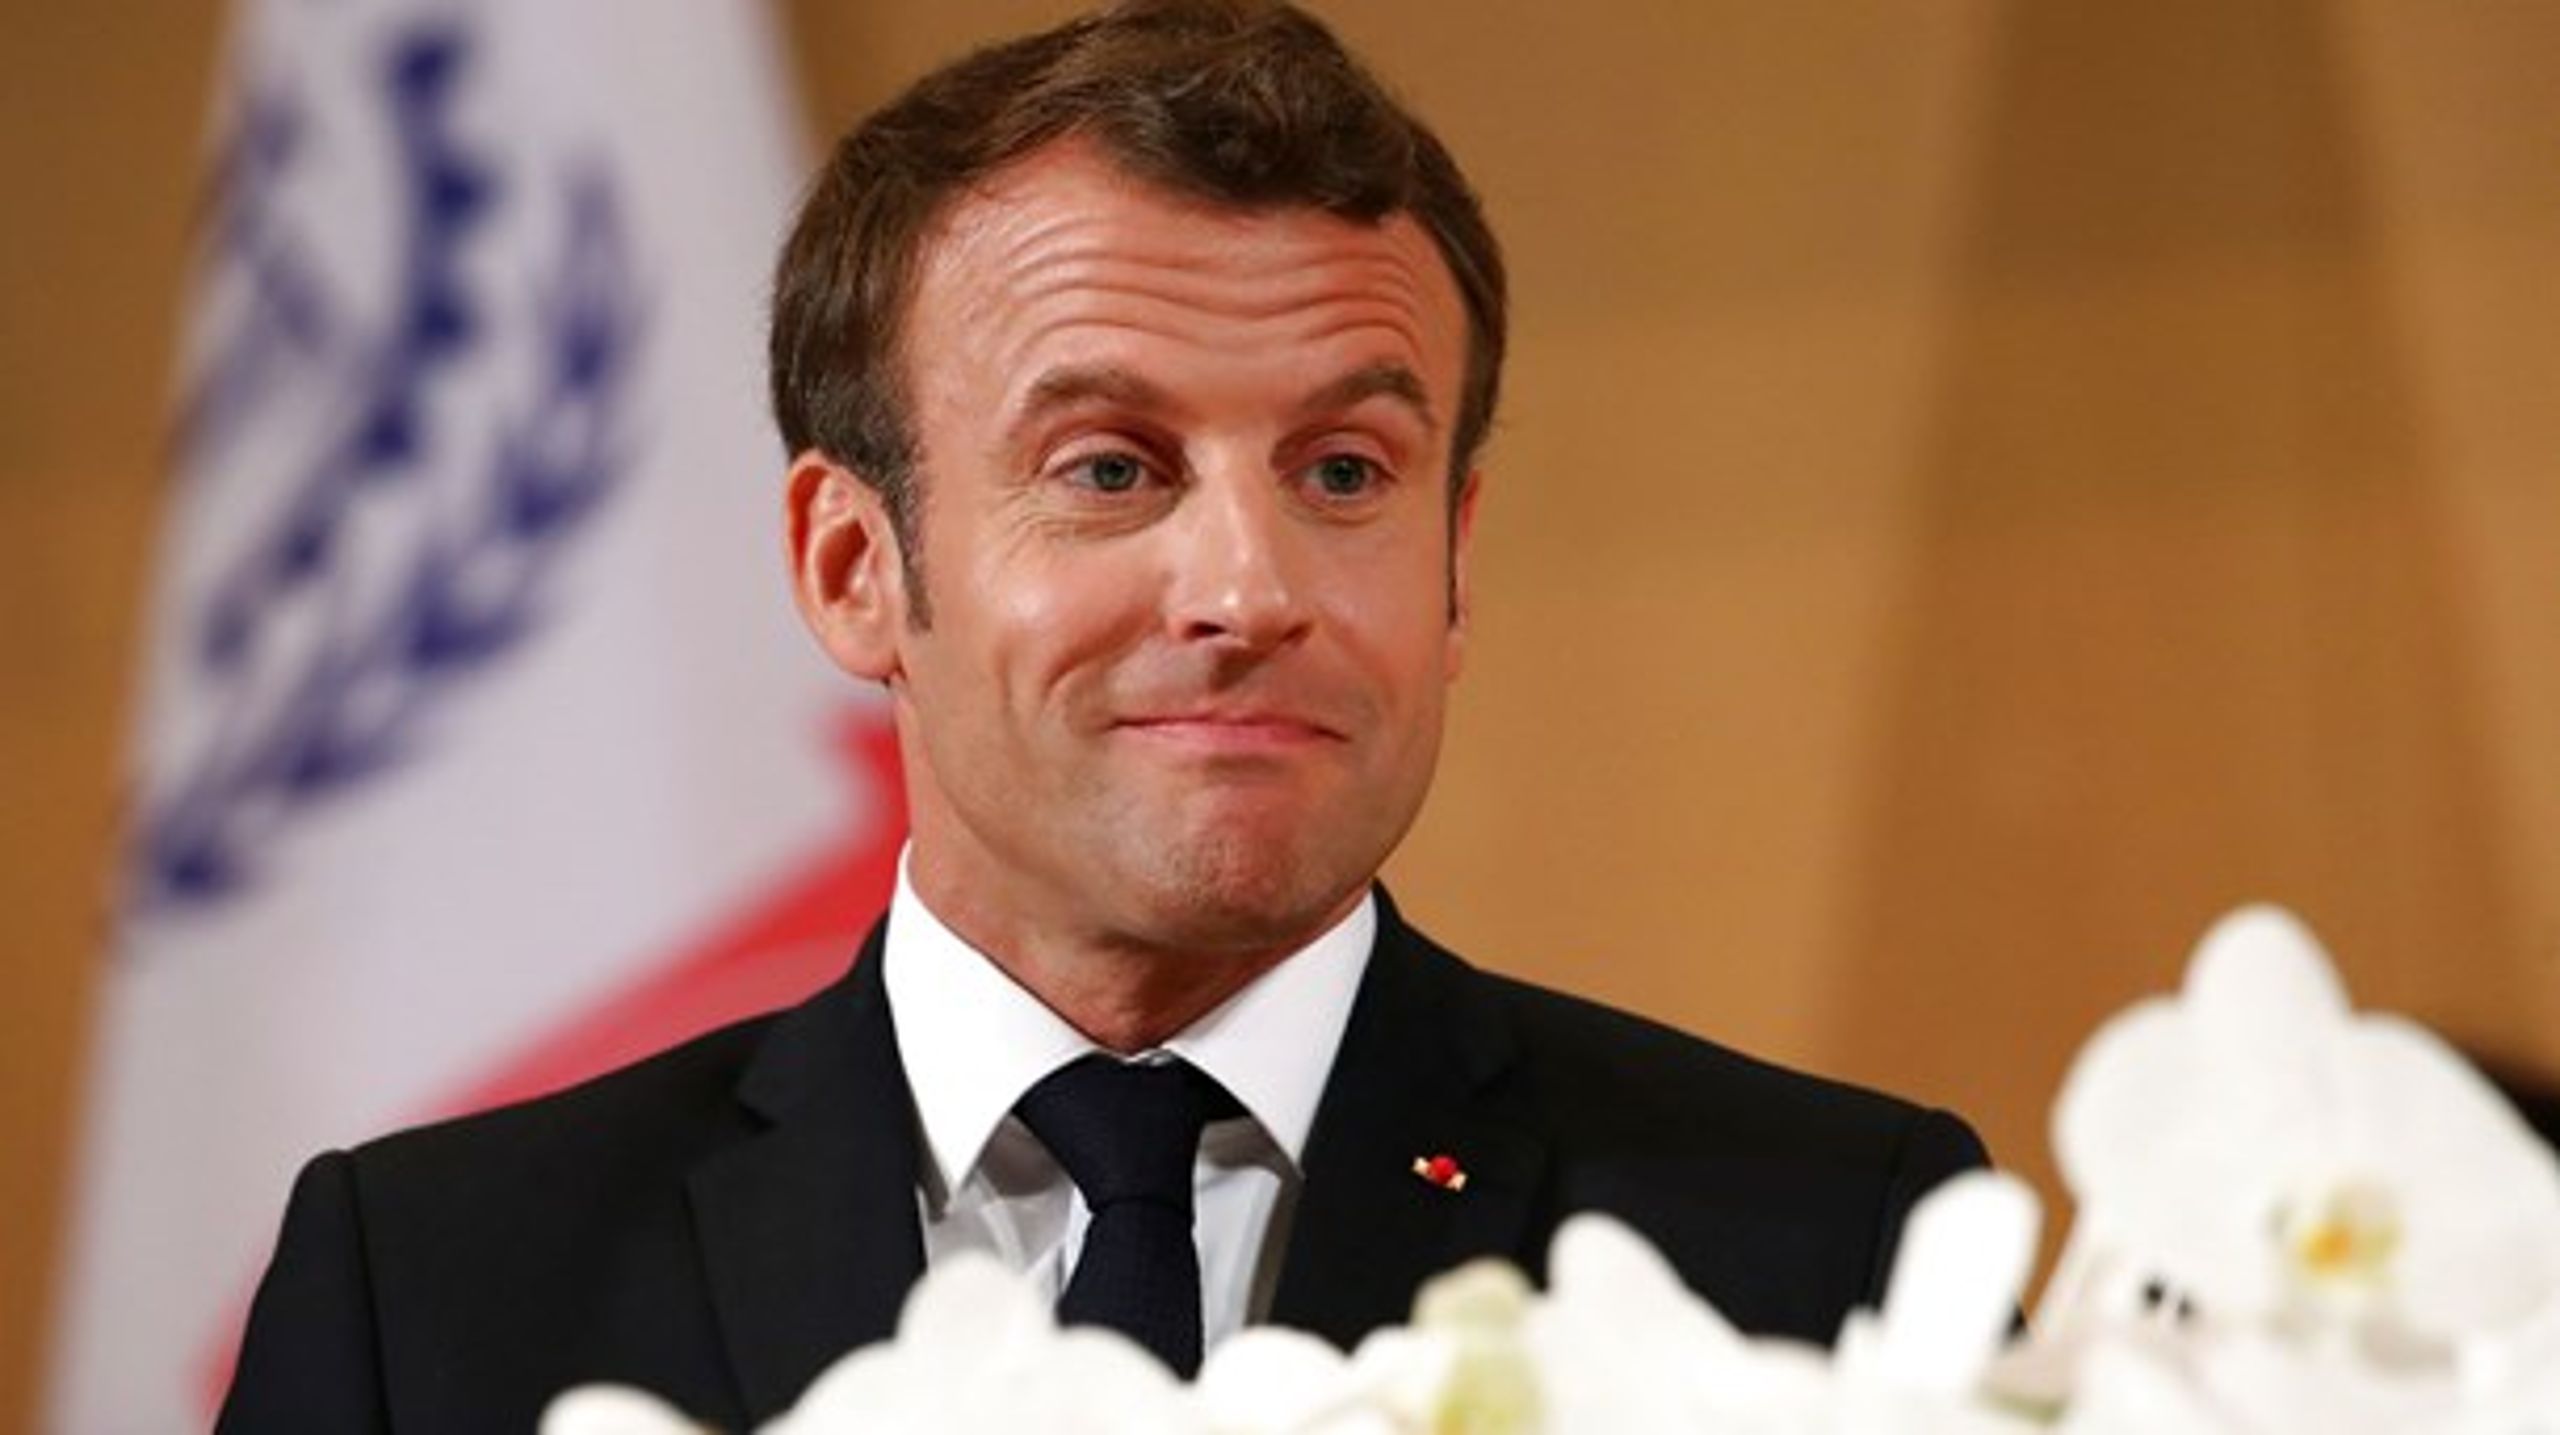 Den franske præsident har krævet et navneskift i bytte for at lade sine partisoldater sidde sammen med de europæiske liberale.